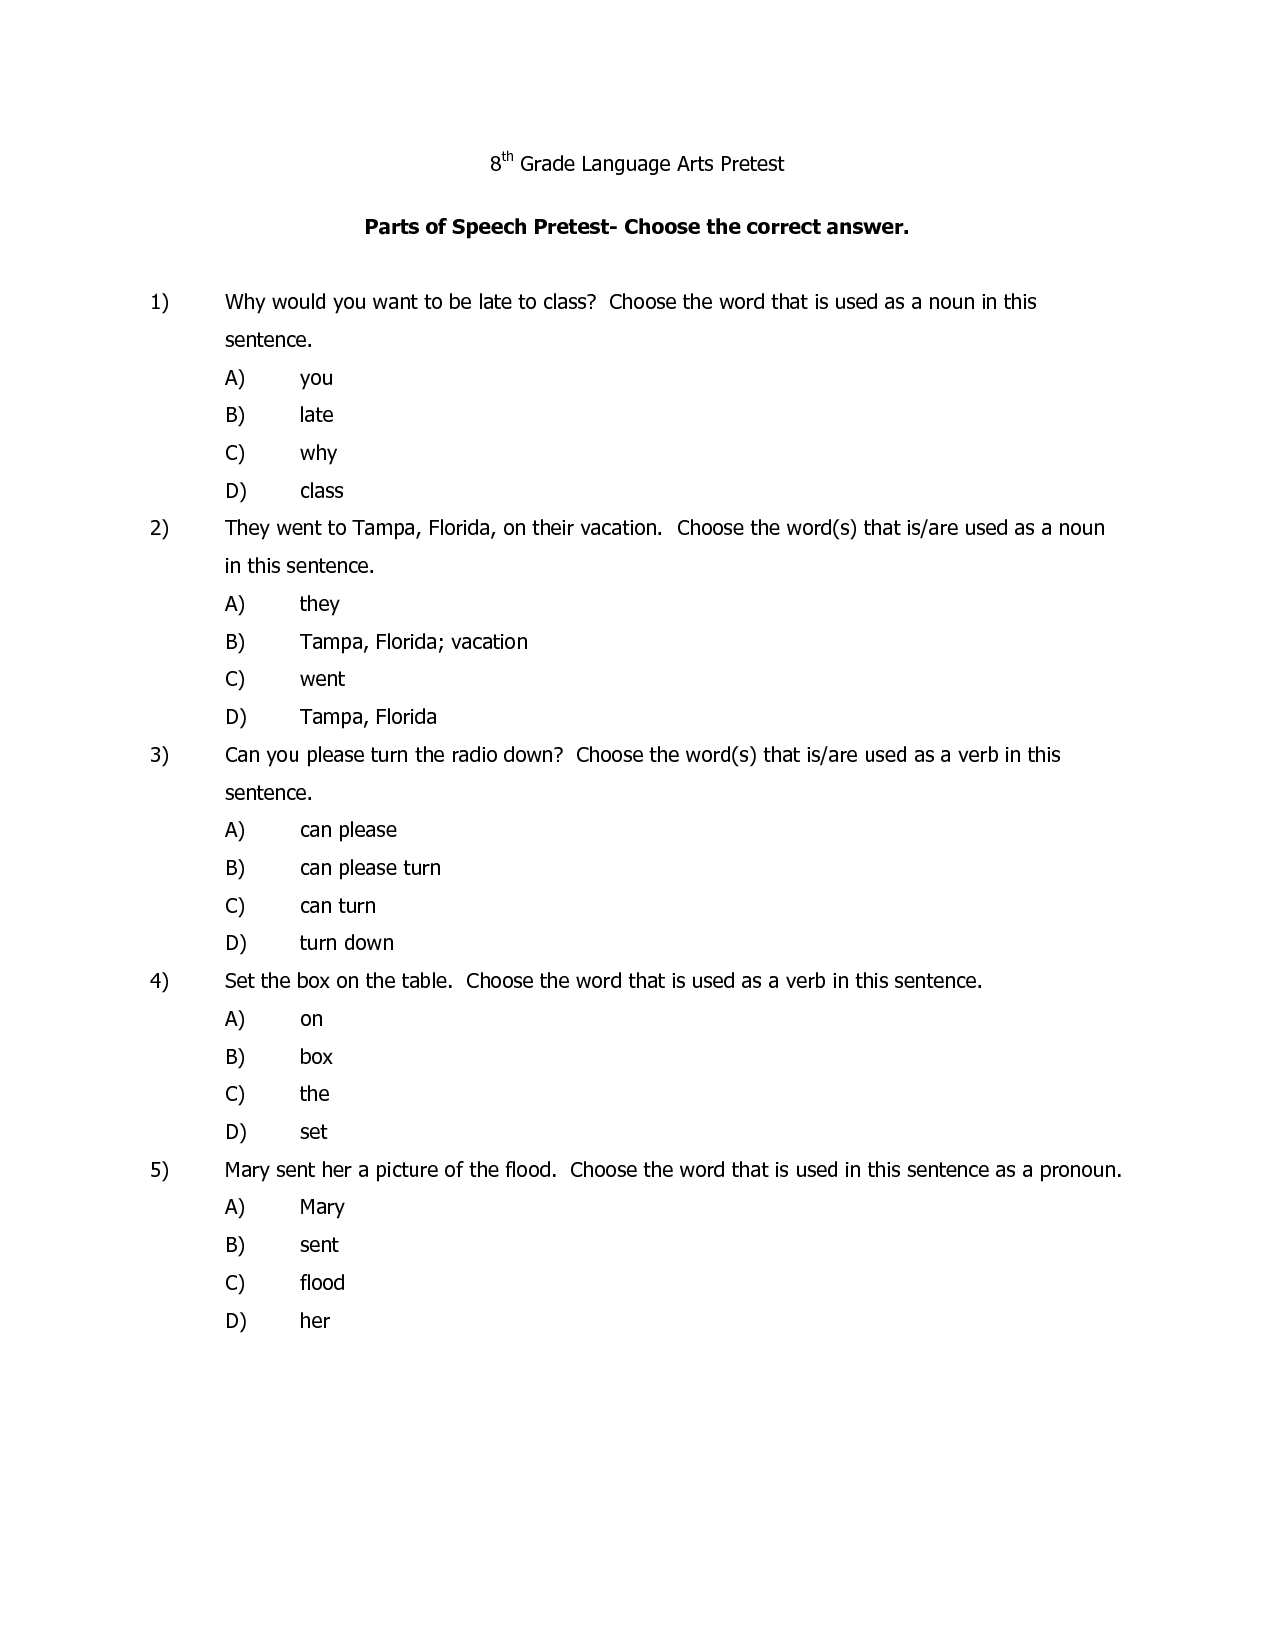 17-best-images-of-grammar-worksheets-8th-8th-grade-grammar-worksheets